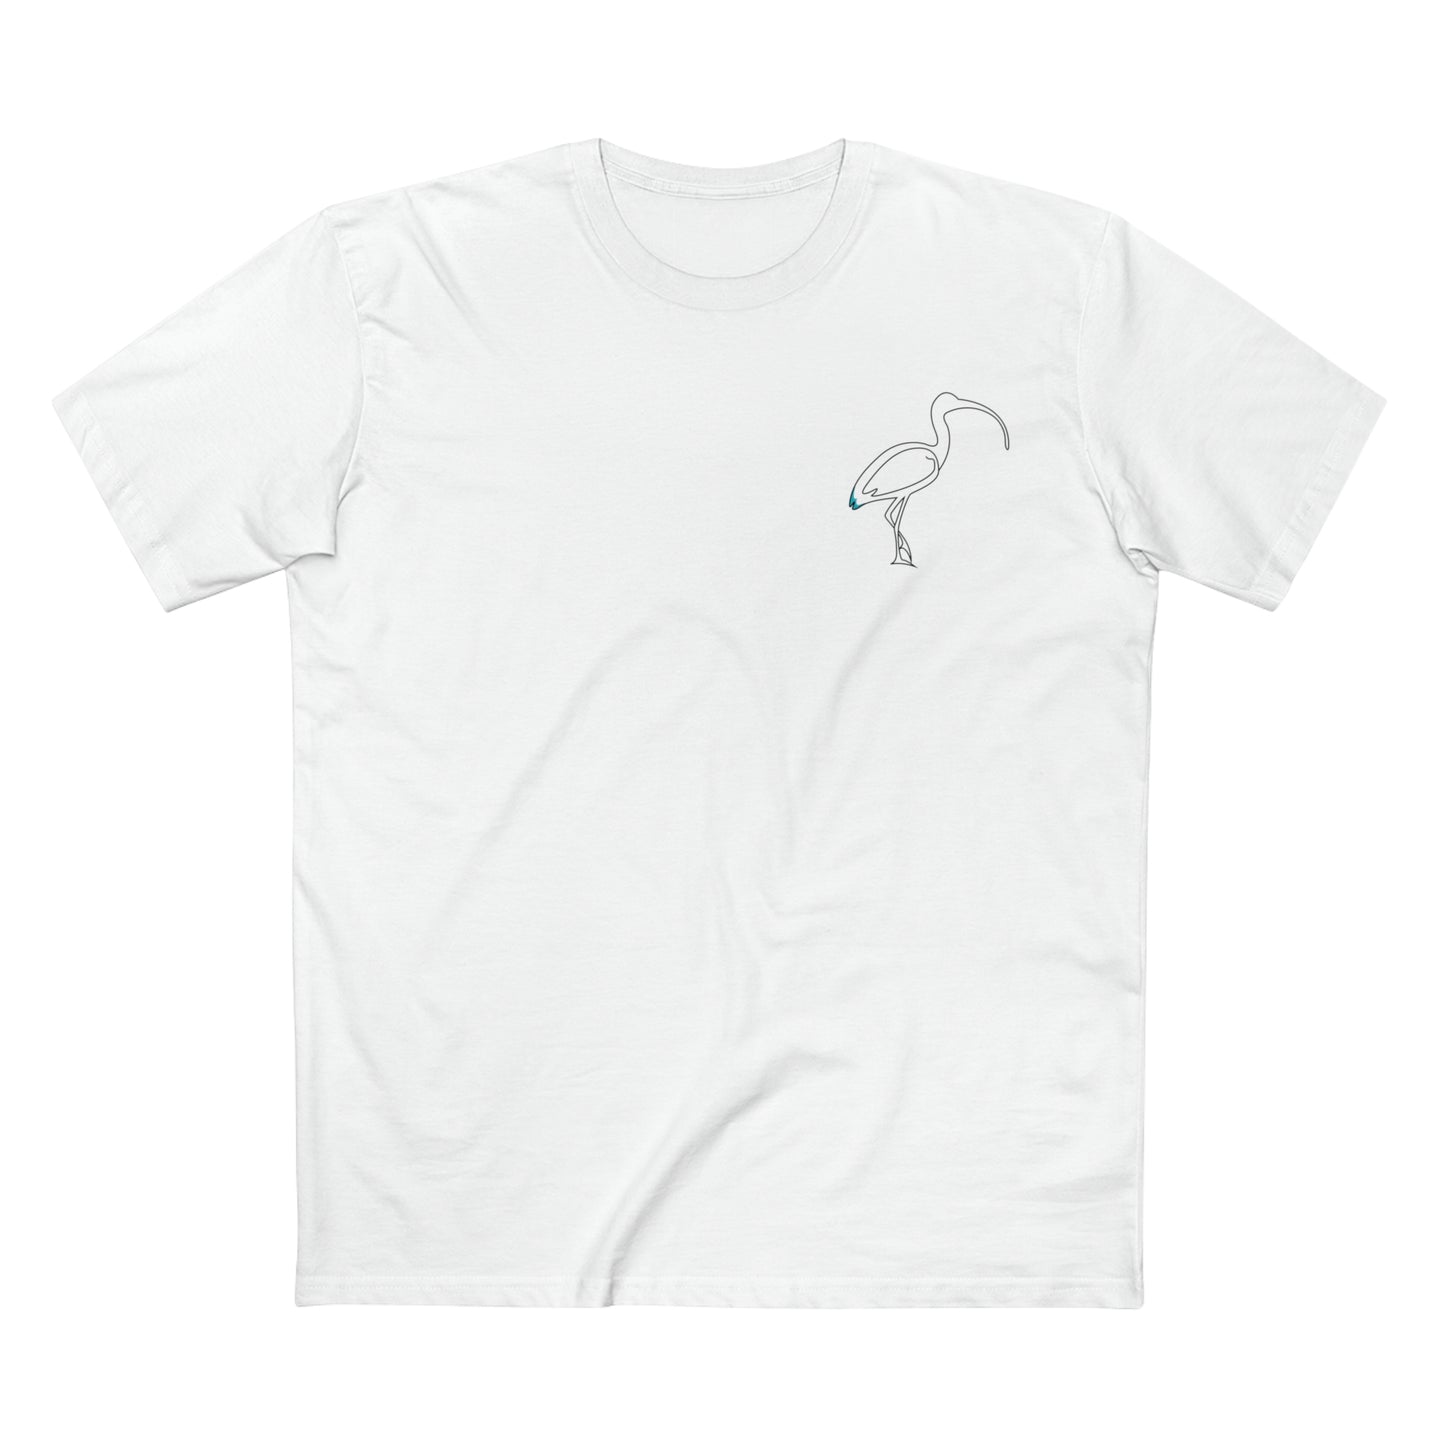 Bin Chicken Crew Shirt - White